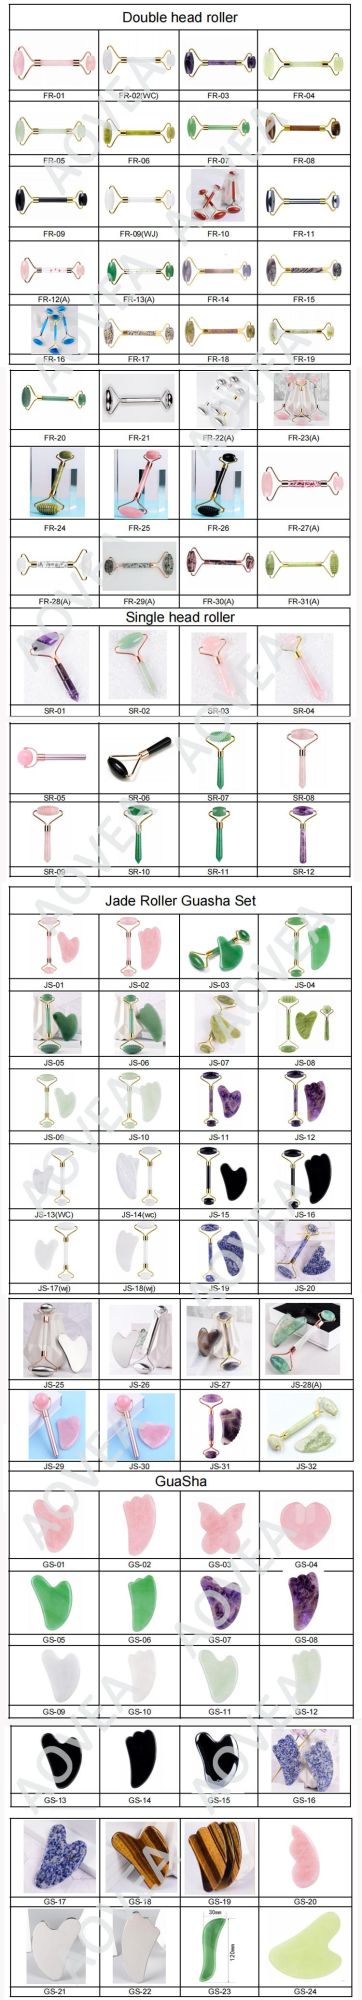 Best Sellers Jade Roller Set 100% Rose Quartz Gua Sha Jade Roller for Face Pink Color Skin Care Jade Roller